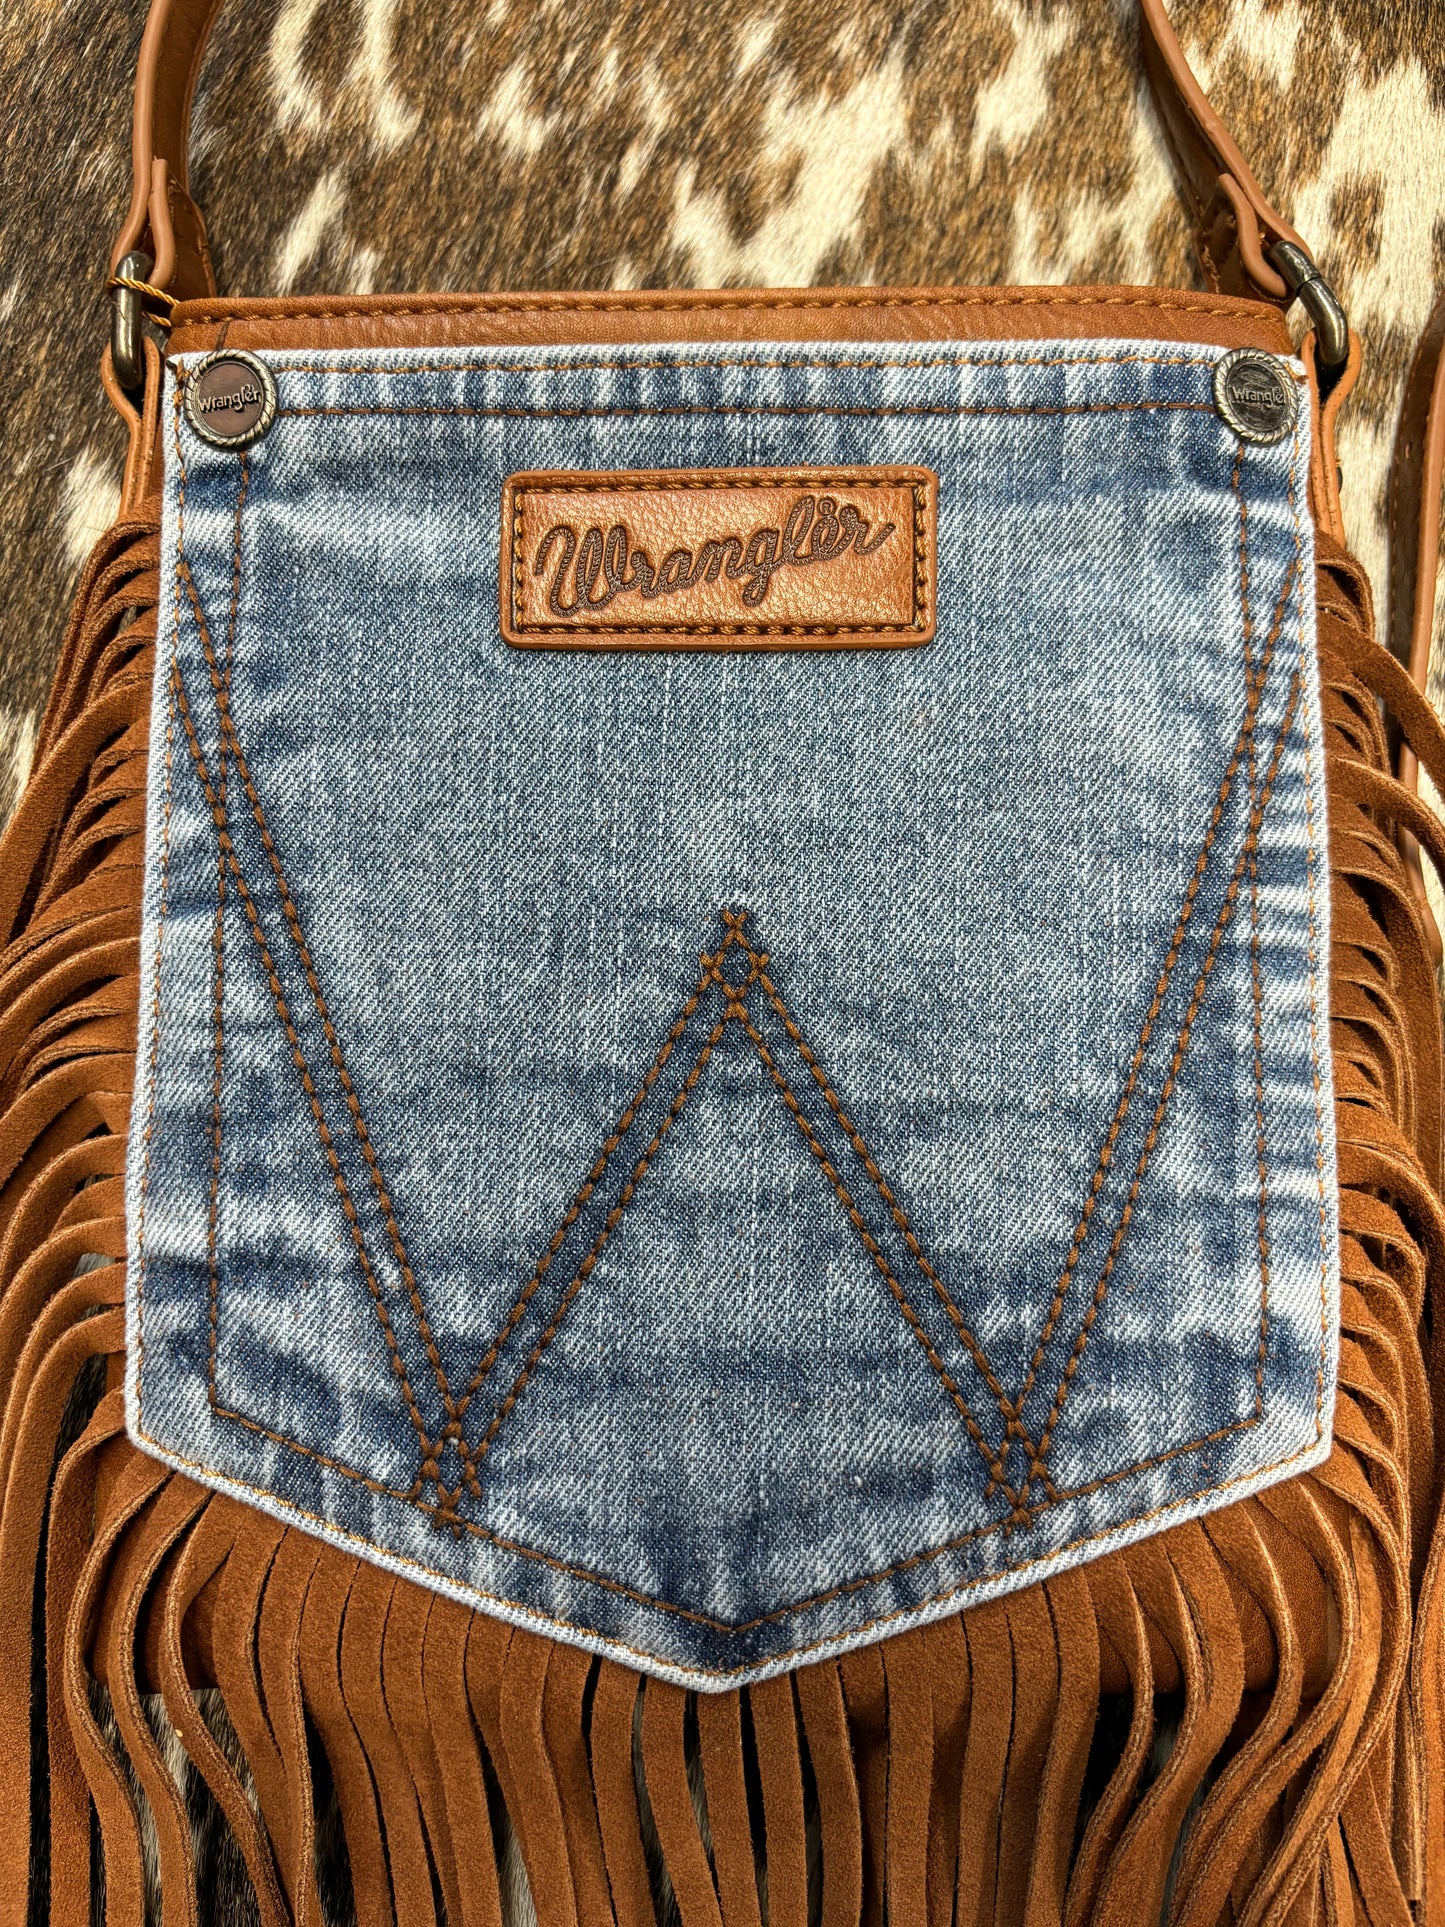 The Wrangler Leather Fringe Jean Pocket Crossbody